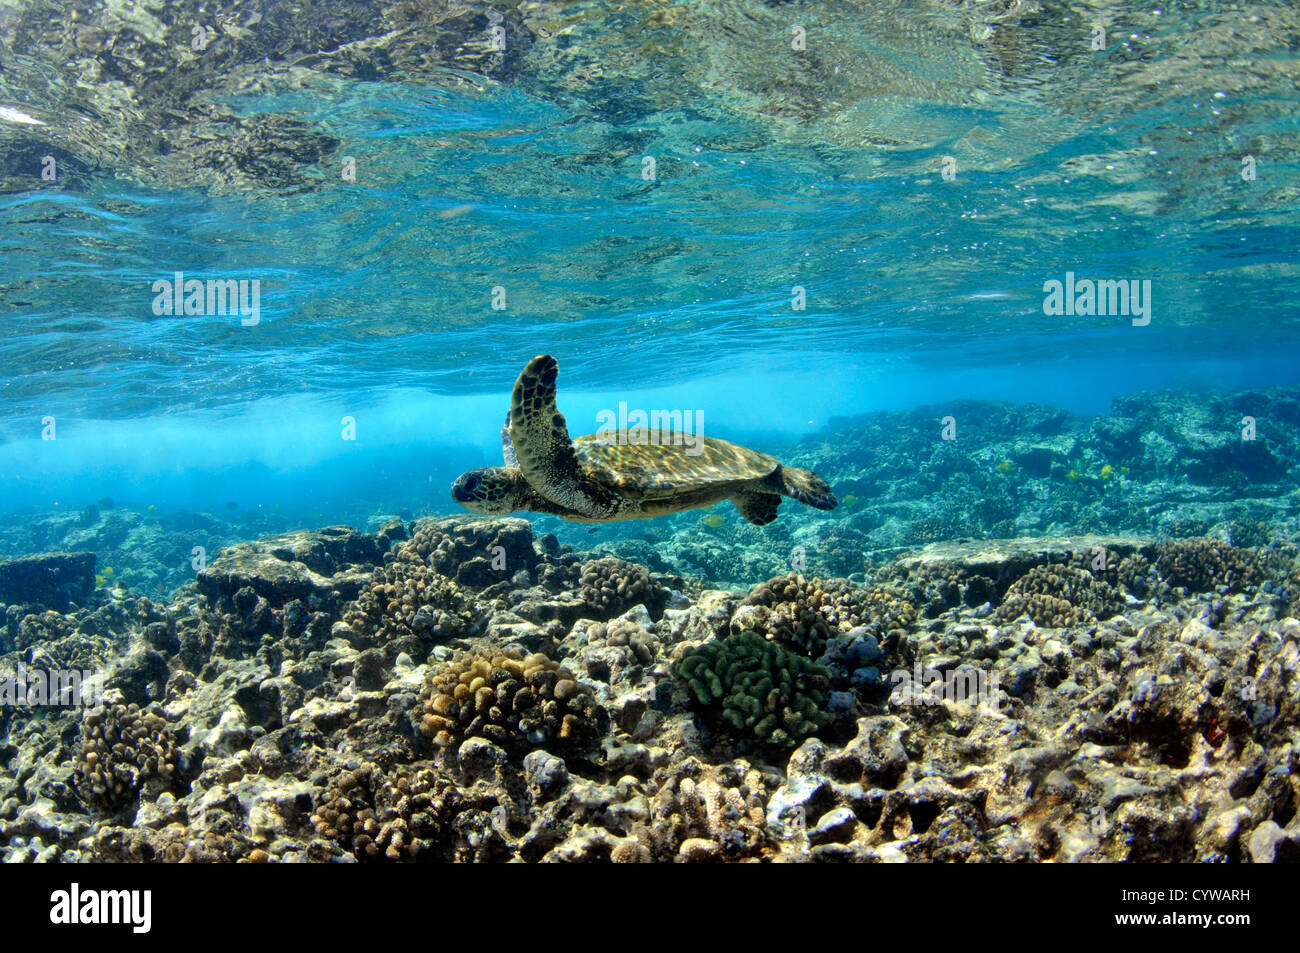 Juvenile grüne Meeresschildkröte, Chelonia Mydas, schwimmt im seichten Korallenriff, Captain Cook, Big Island, Hawaii, Nordpazifik Stockfoto